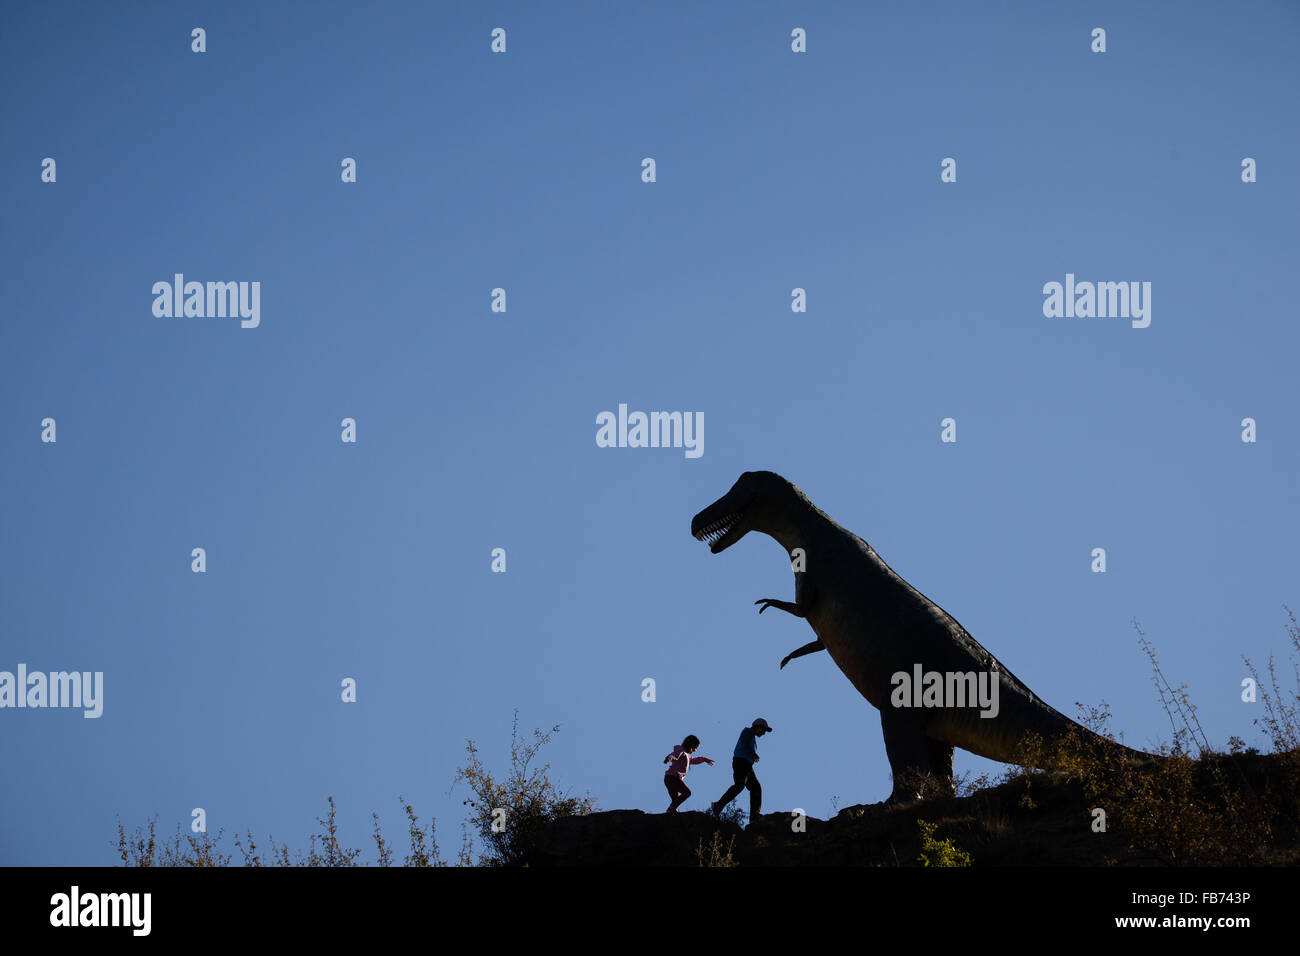 3/10/15 bambini accanto al modello Tyrannosaurus Rex, Enciso, sul percorso del GR93 a lunga distanza percorso, La Rioja, Spagna Foto Stock